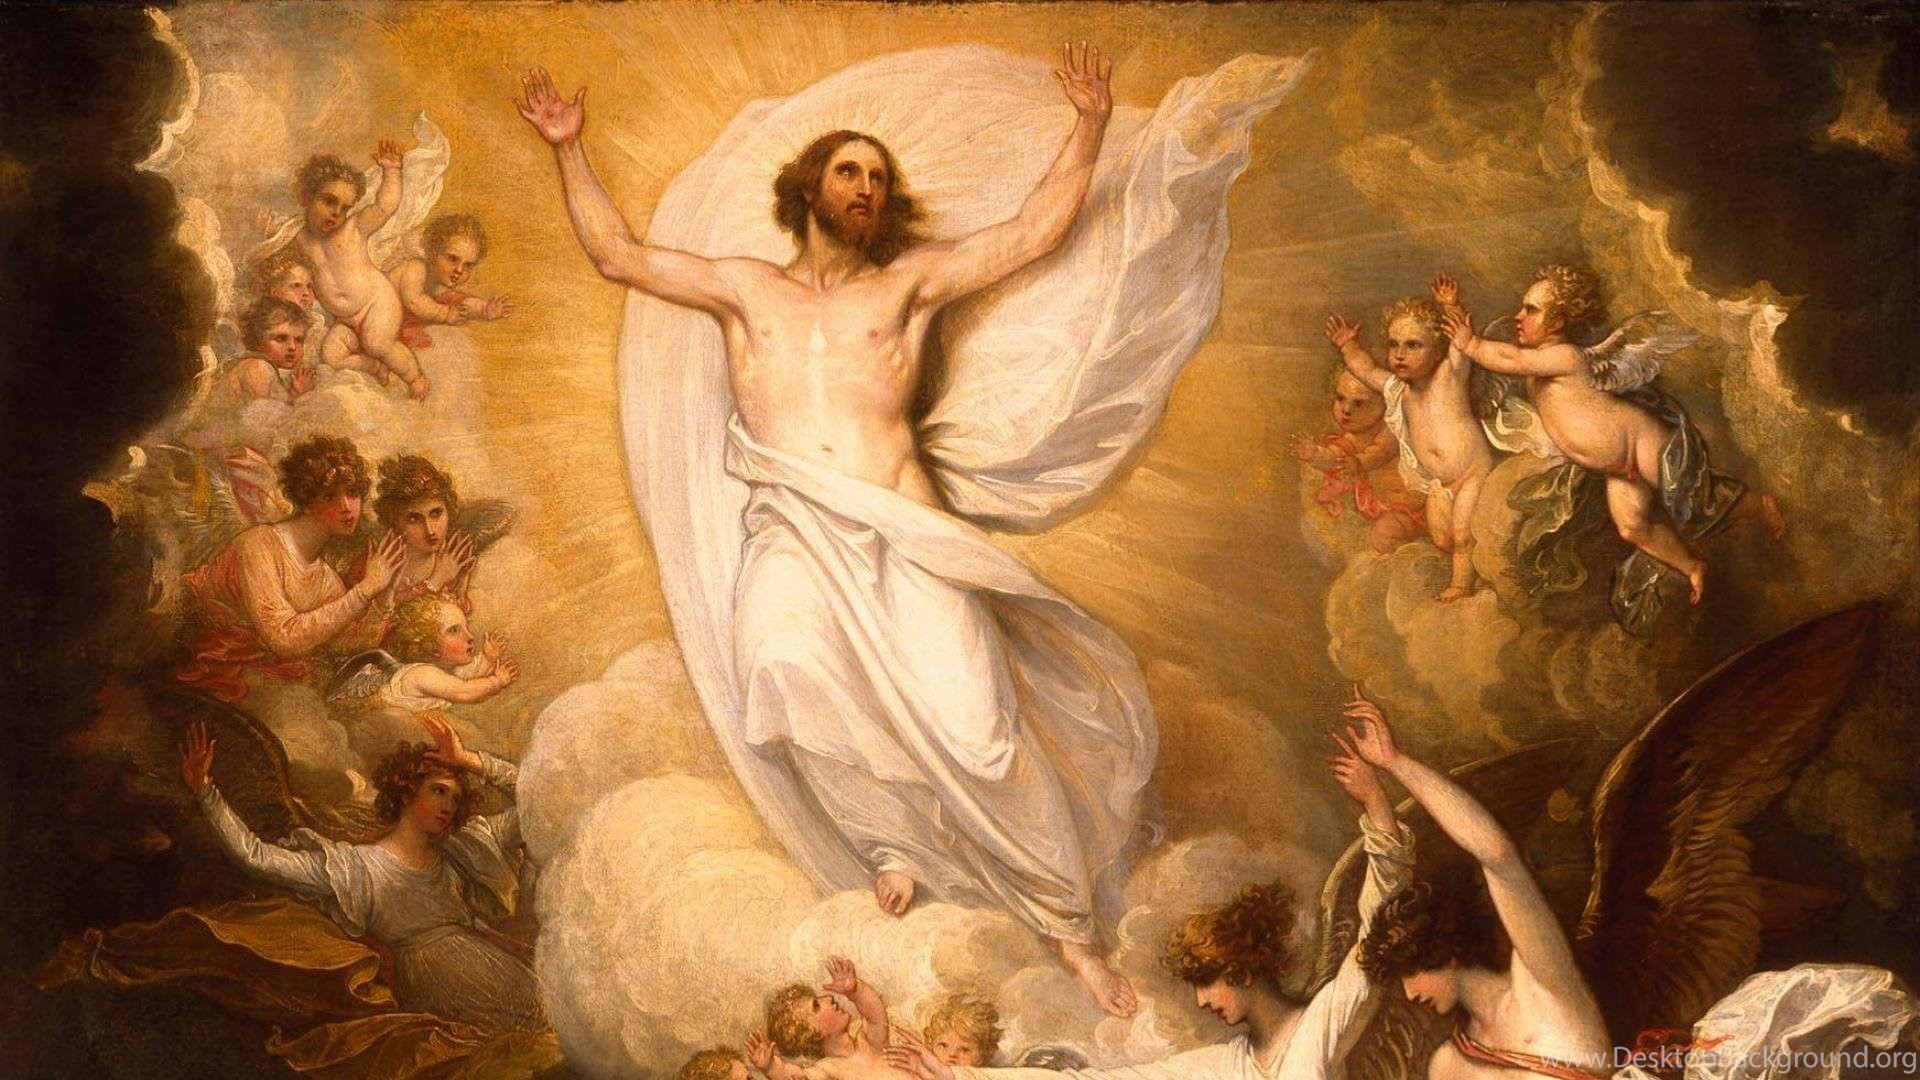 Tổng hợp những hình ảnh đẹp nhất về Chúa Giêsu | Divine mercy image, Divine  mercy, Jesus christ images